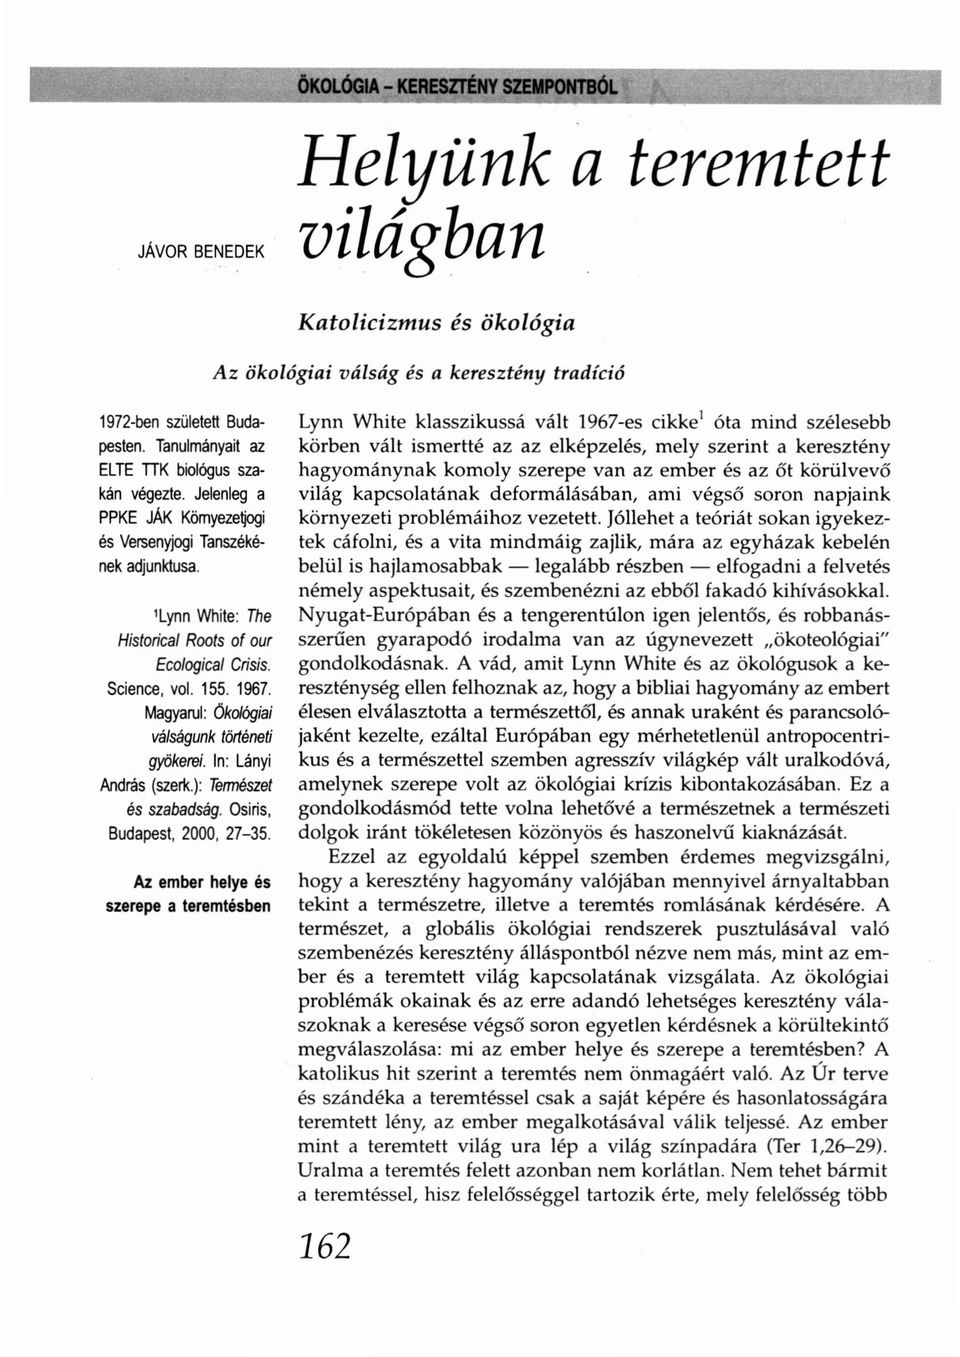 Magyarul: Ökológiai válságunk történeti gyökerei. In: Lányi András (szerk.): Természet és szabadság. Osiris, Budapest, 2000, 27-35.